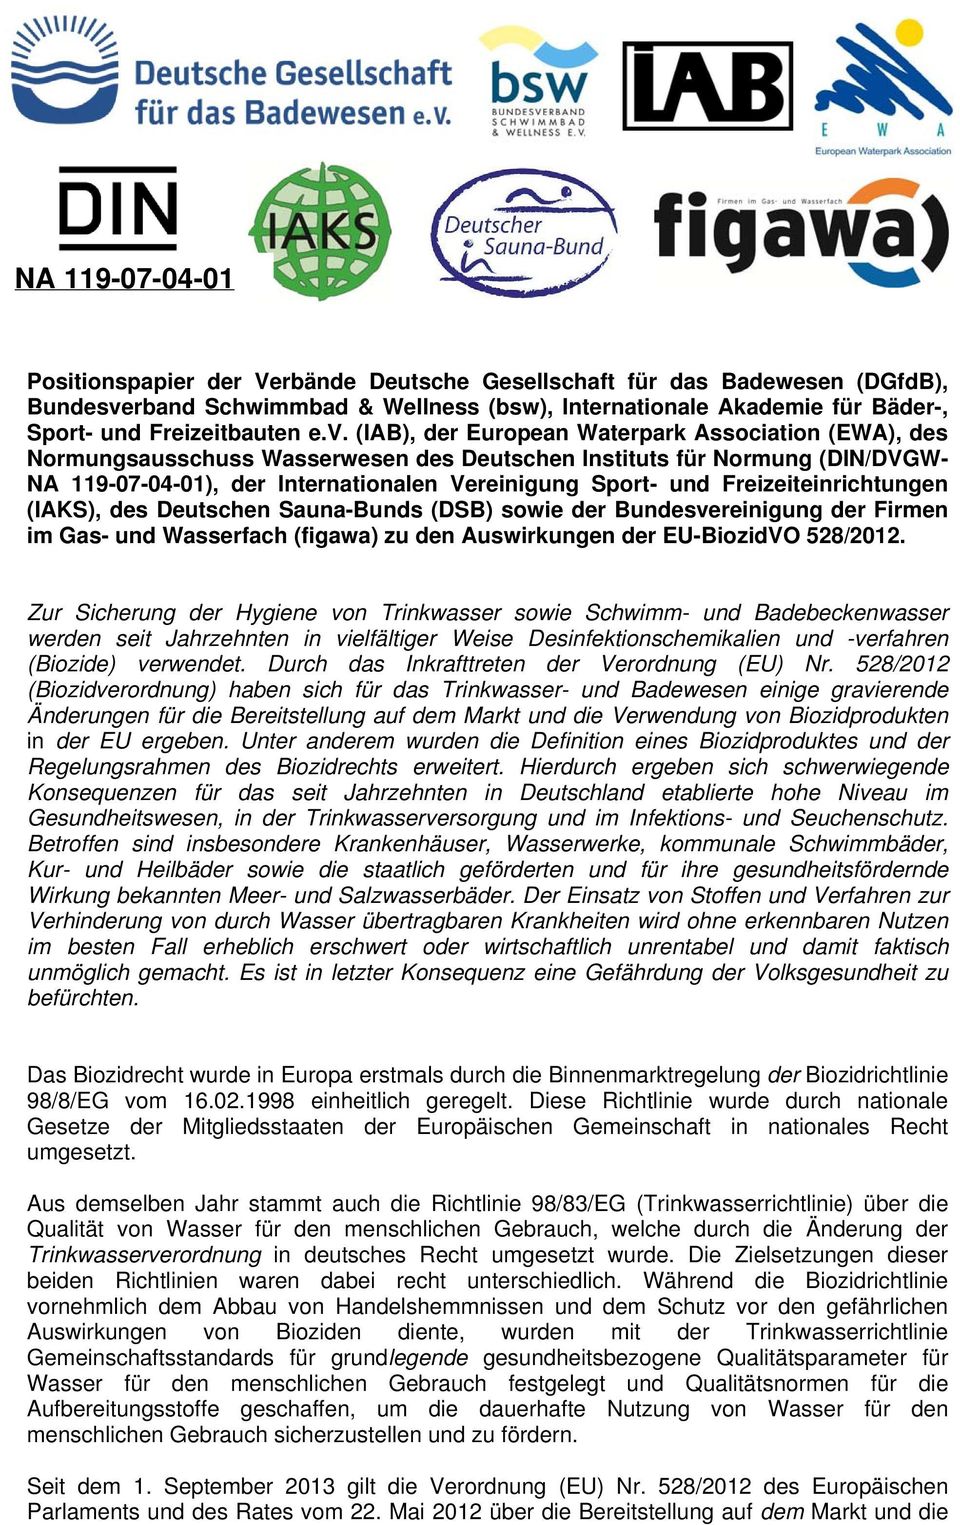 Freizeiteinrichtungen (IAKS), des Deutschen Sauna-Bunds (DSB) sowie der Bundesvereinigung der Firmen im Gas- und Wasserfach (figawa) zu den Auswirkungen der EU-BiozidVO 528/2012.